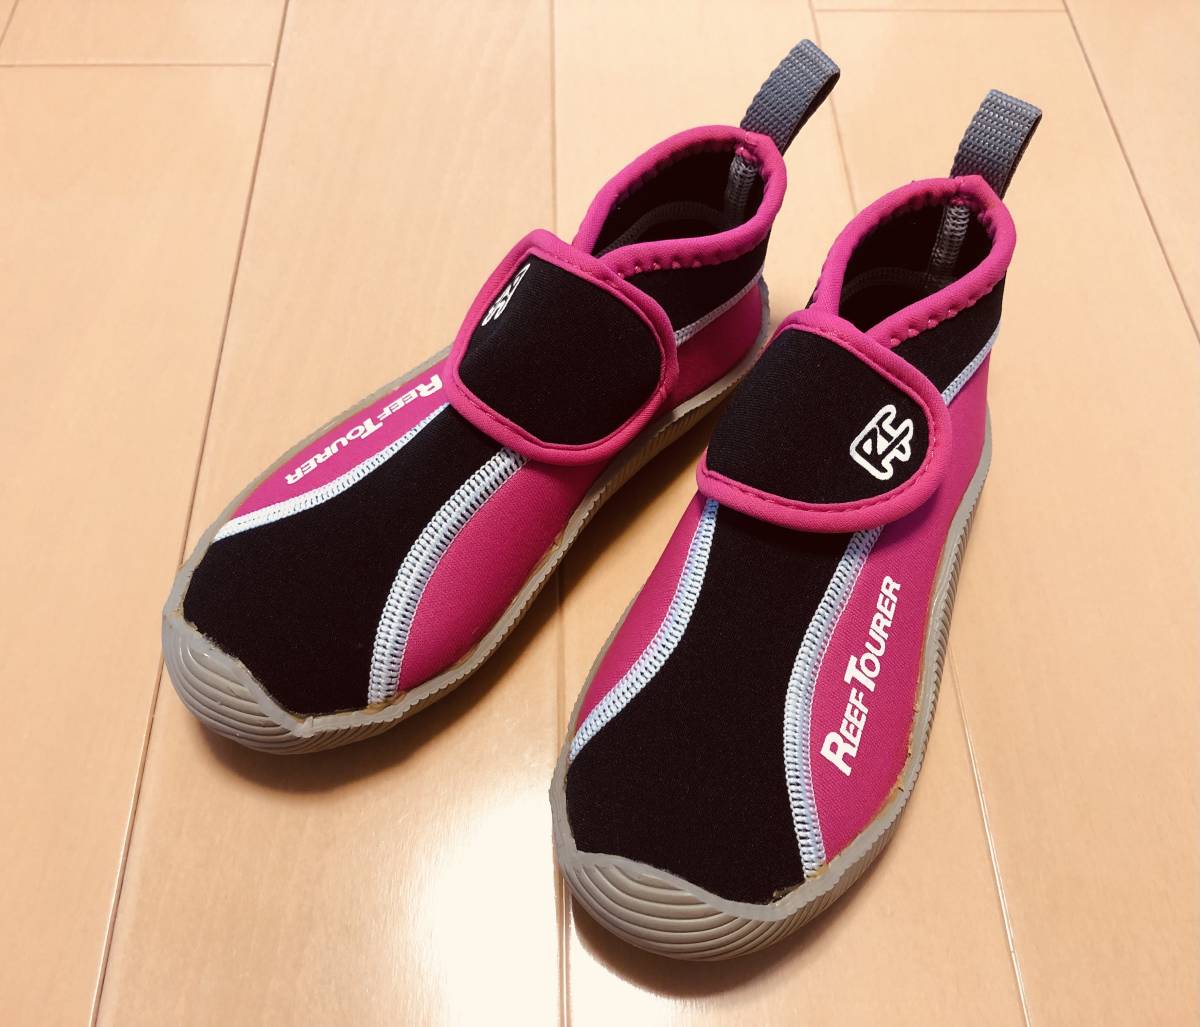 *0 REEF TOURER leaf Tourer морской обувь aqua обувь вода обувь текстильная застёжка 19cm розовый 0*